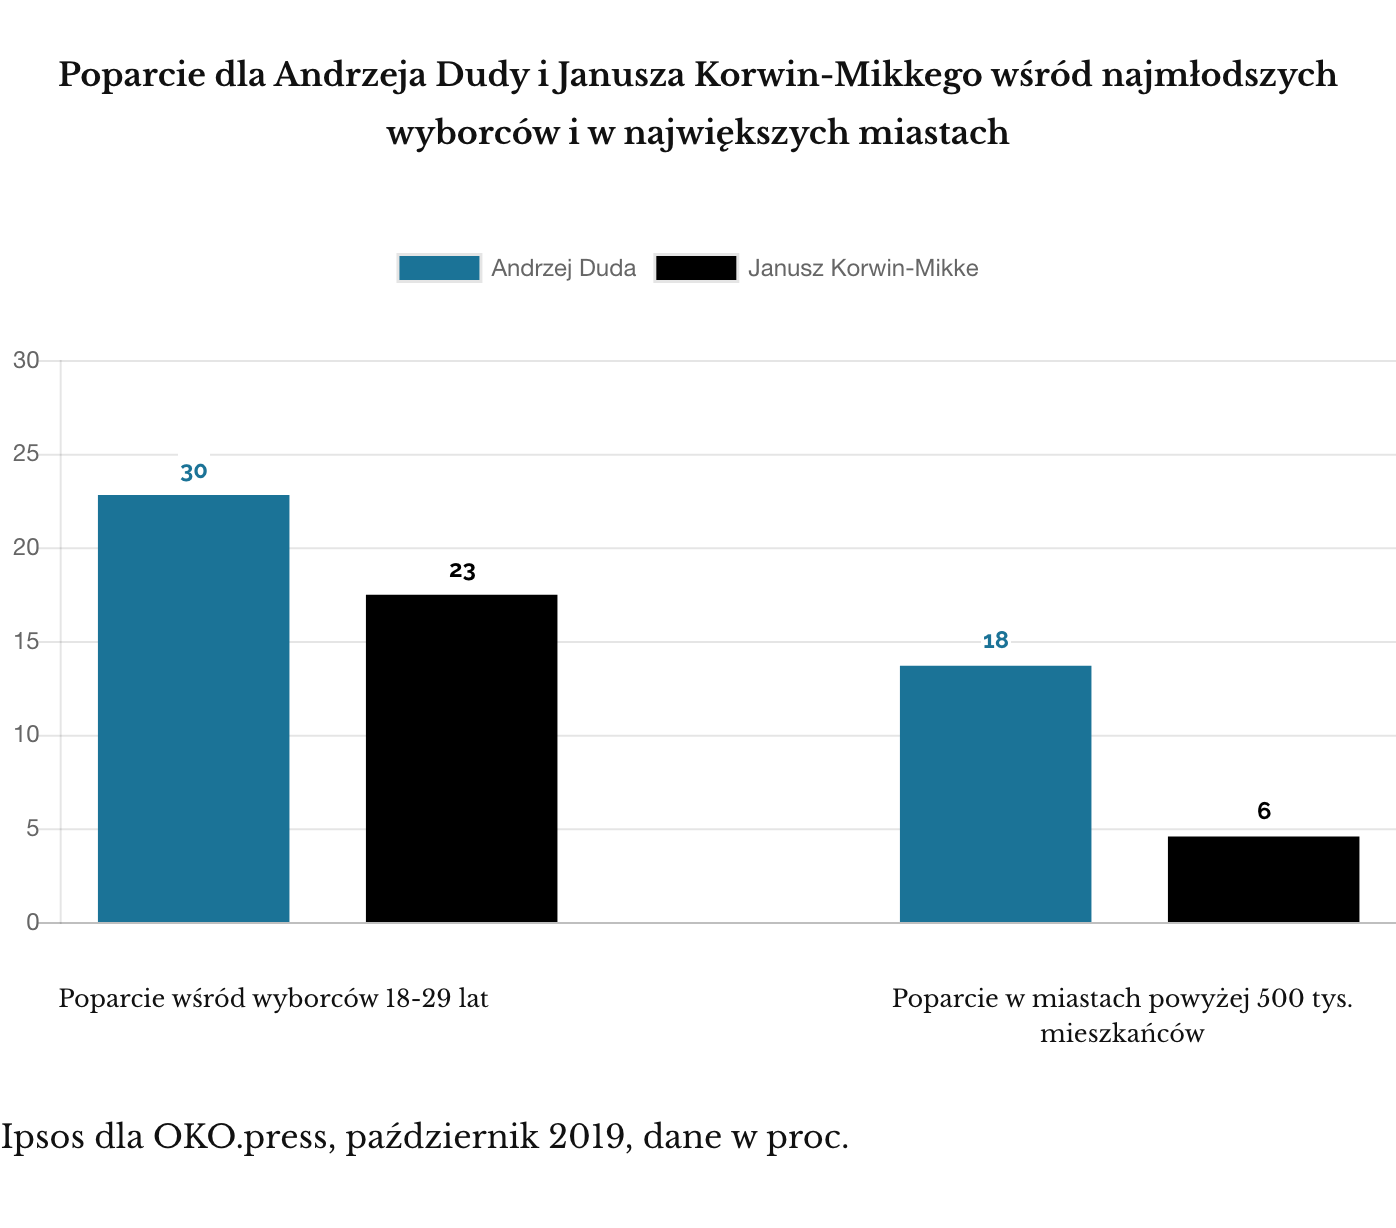 Ipsos dla OKO.press, październik 2019. Korwin vs. Duda